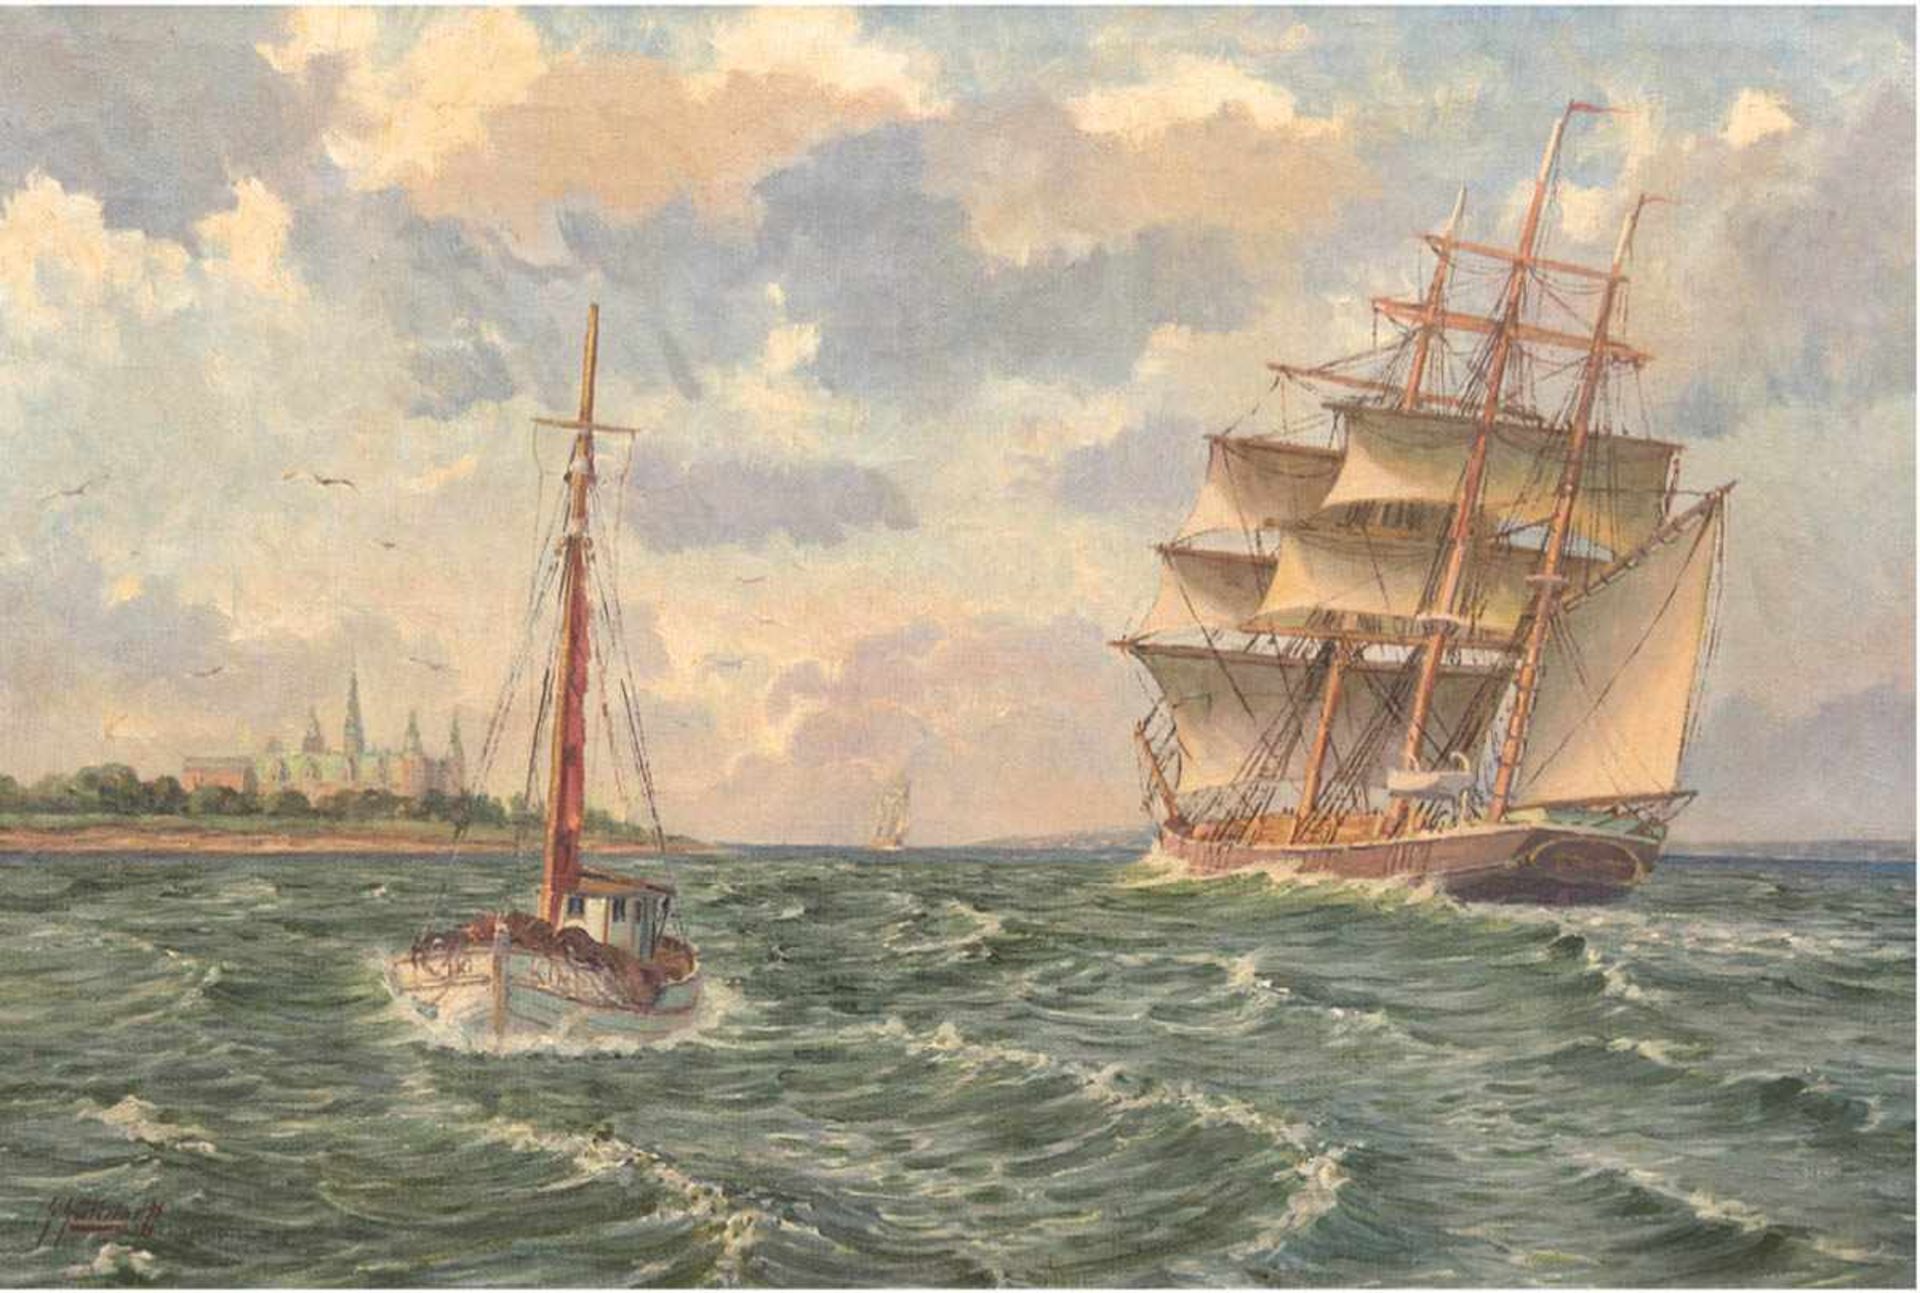 Gundorff, Georg (1876-1925) "Segelschiff vor dänischer Küste", Öl/Lw., sign. u.l., 67,5x97 cm,